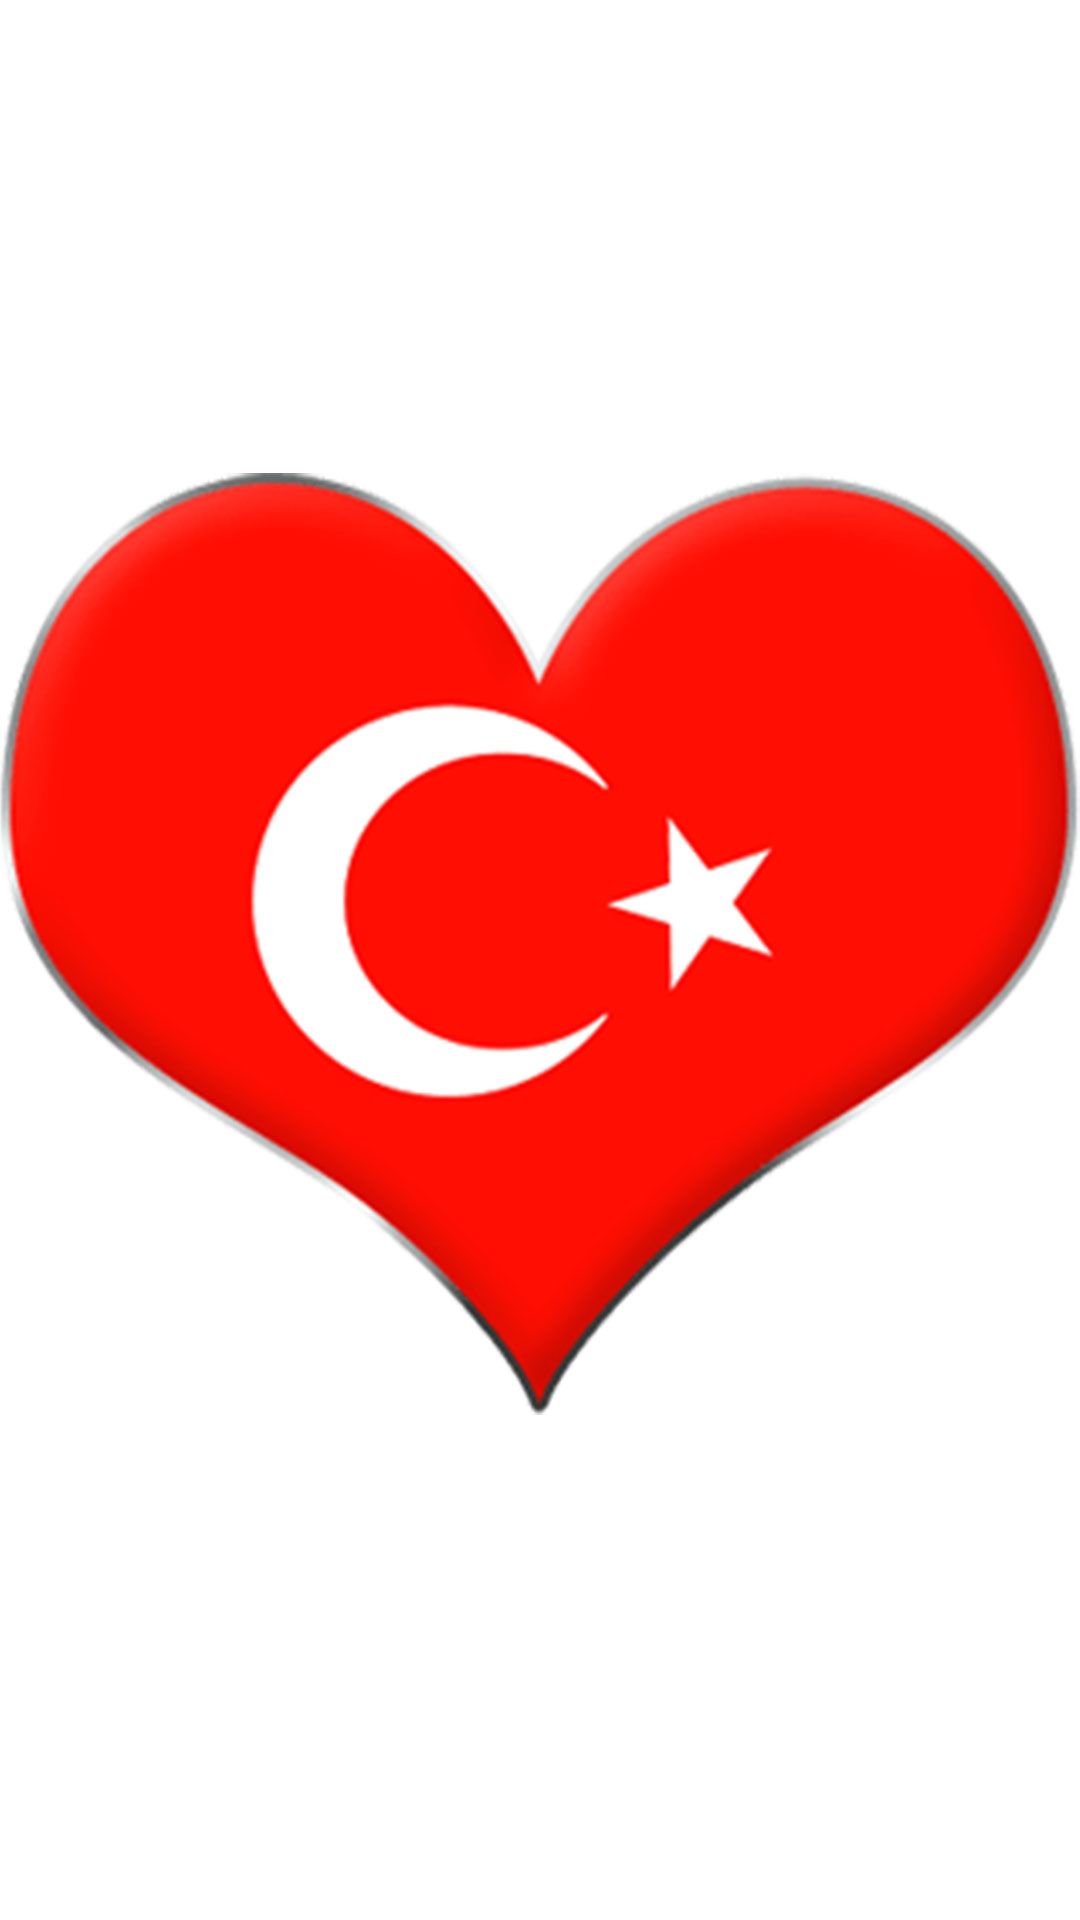 Kalpli turk bayragi 10